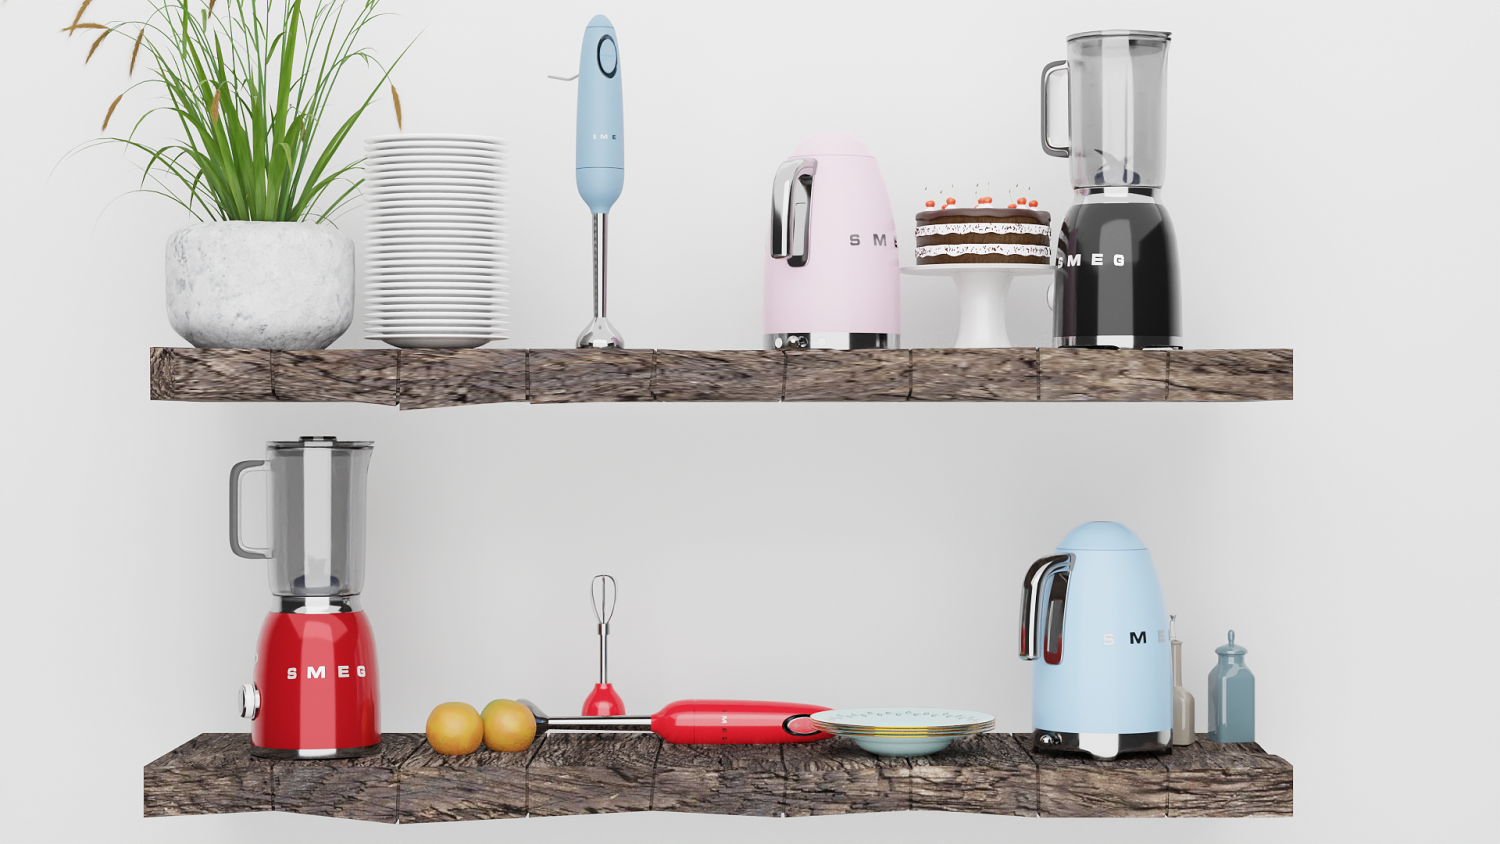 Set of kitchen appliances SMEG 04 3D model